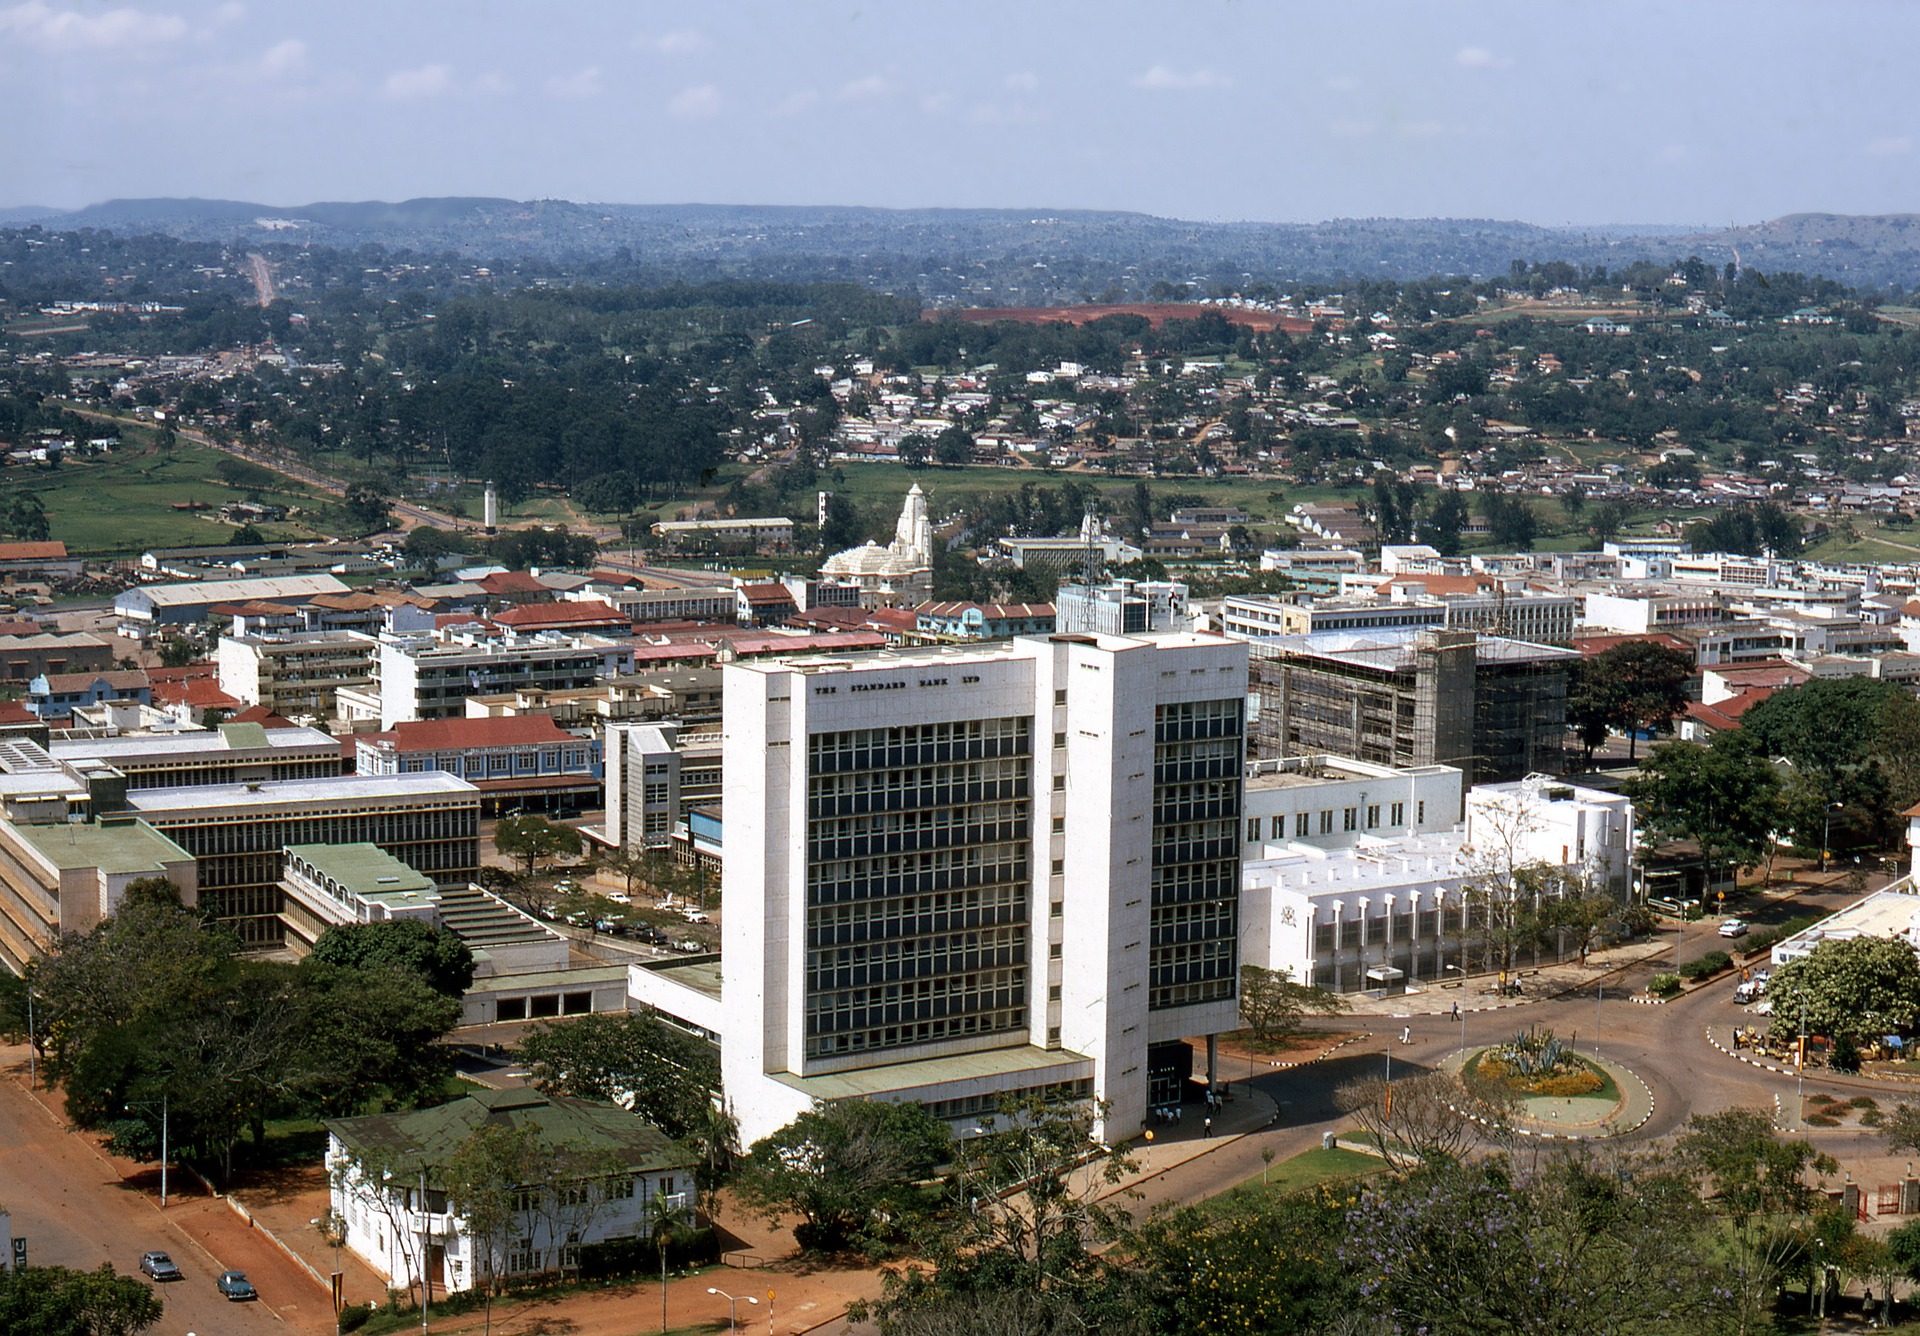 Overlooking the Ugandan capital city, Kampala